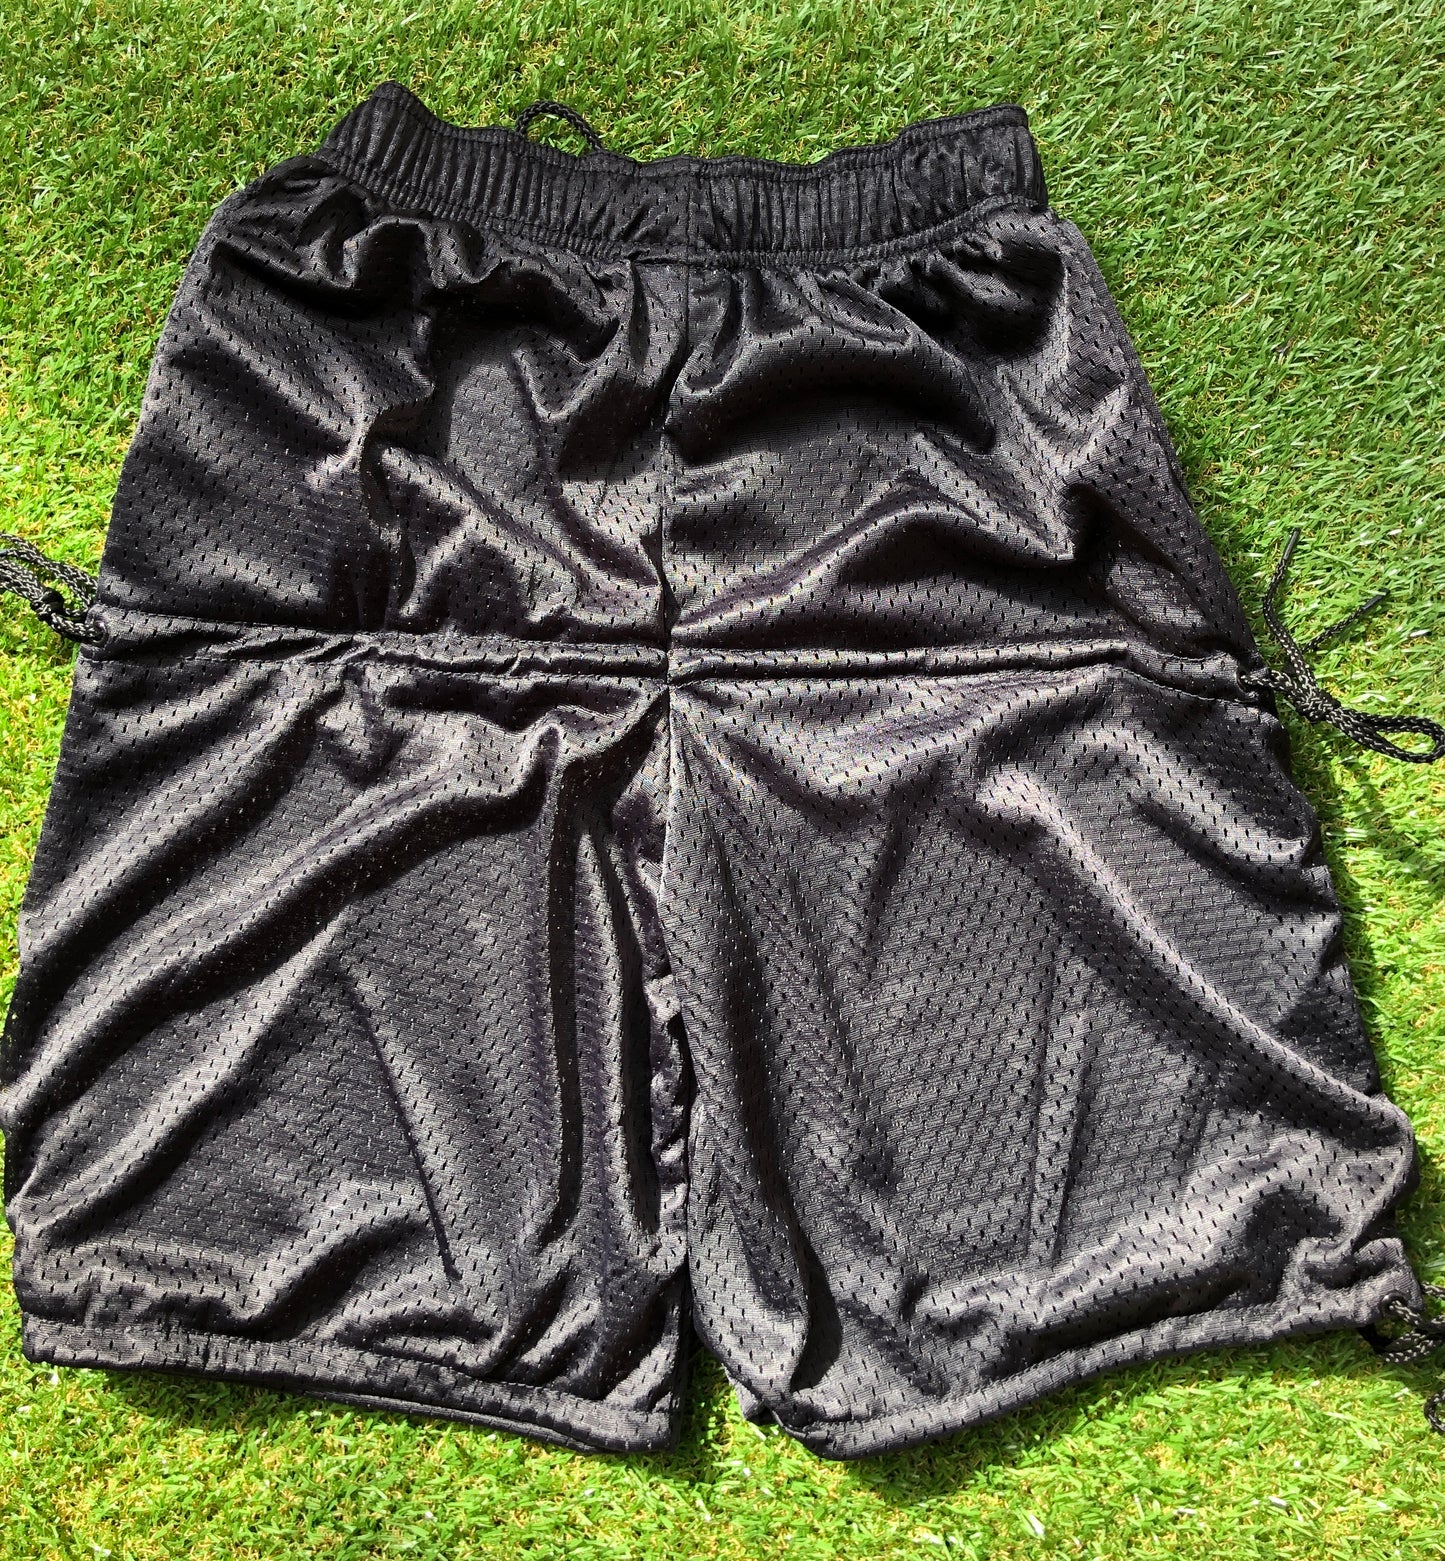 STX Youth Lacrosse Goalie Pants - Medium/Large